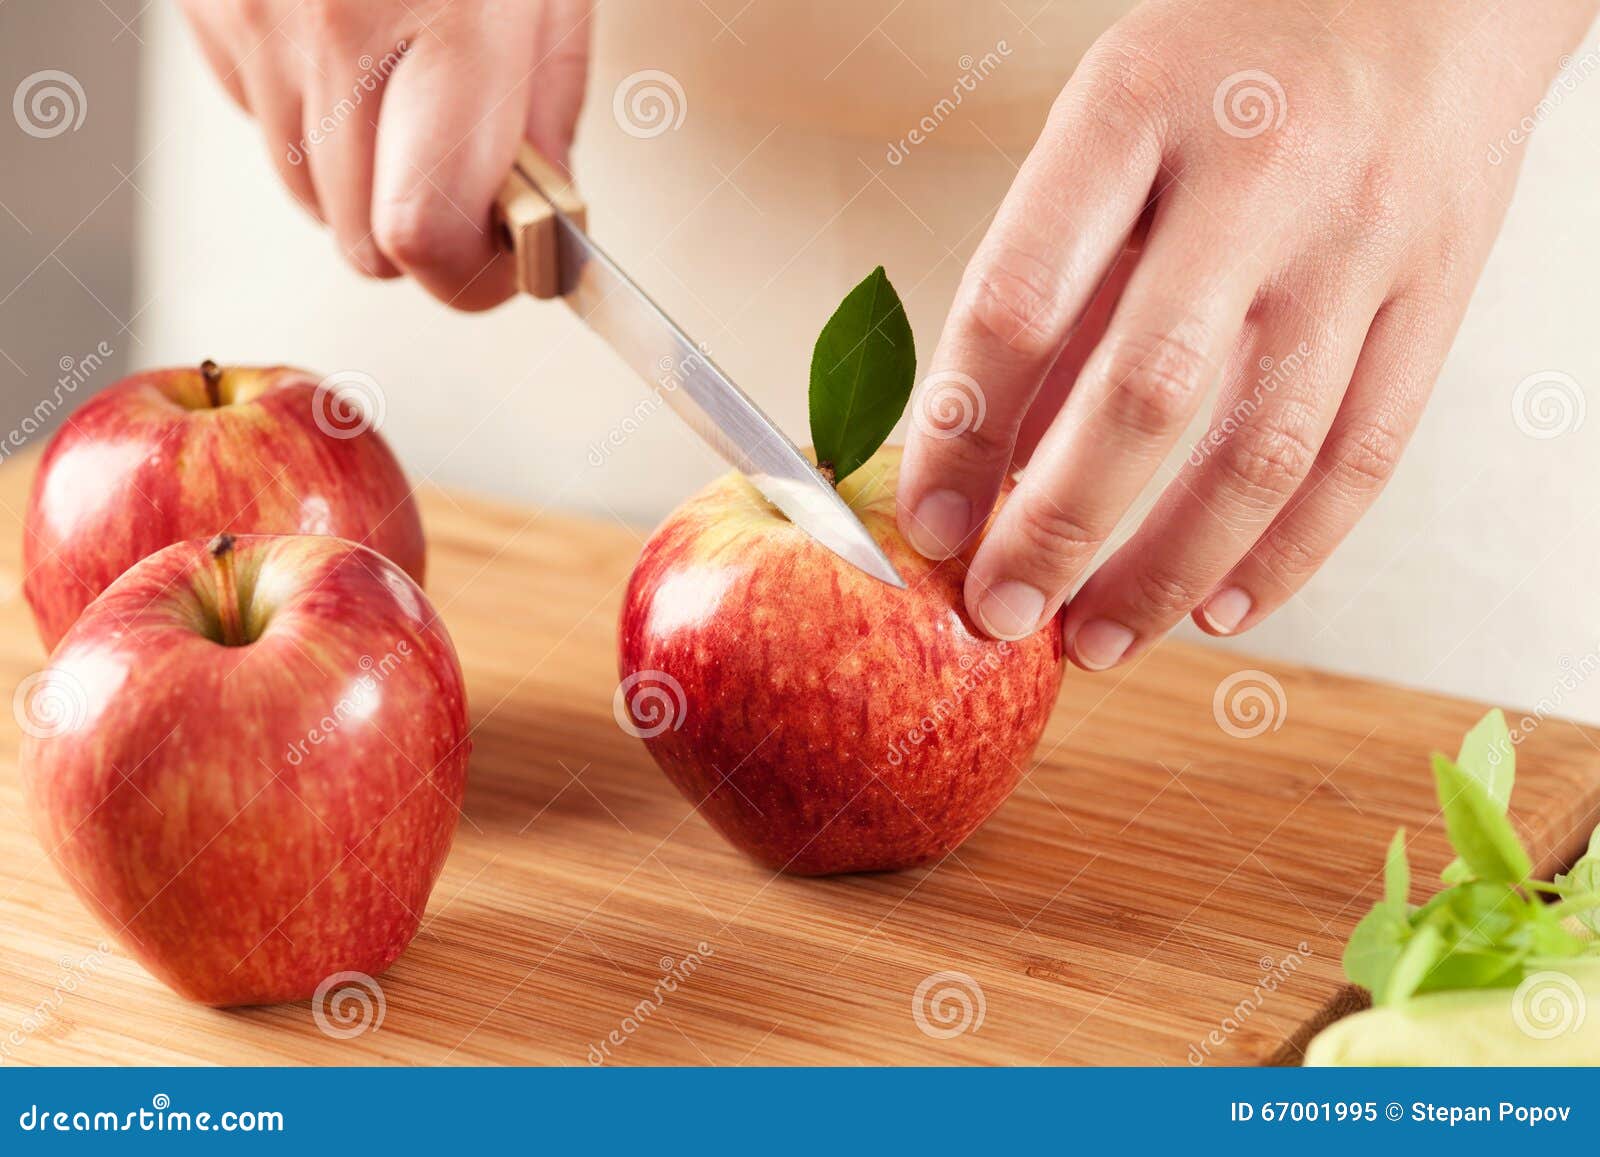 Donna che taglia una mela immagine stock. Immagine di frutta - 67001995